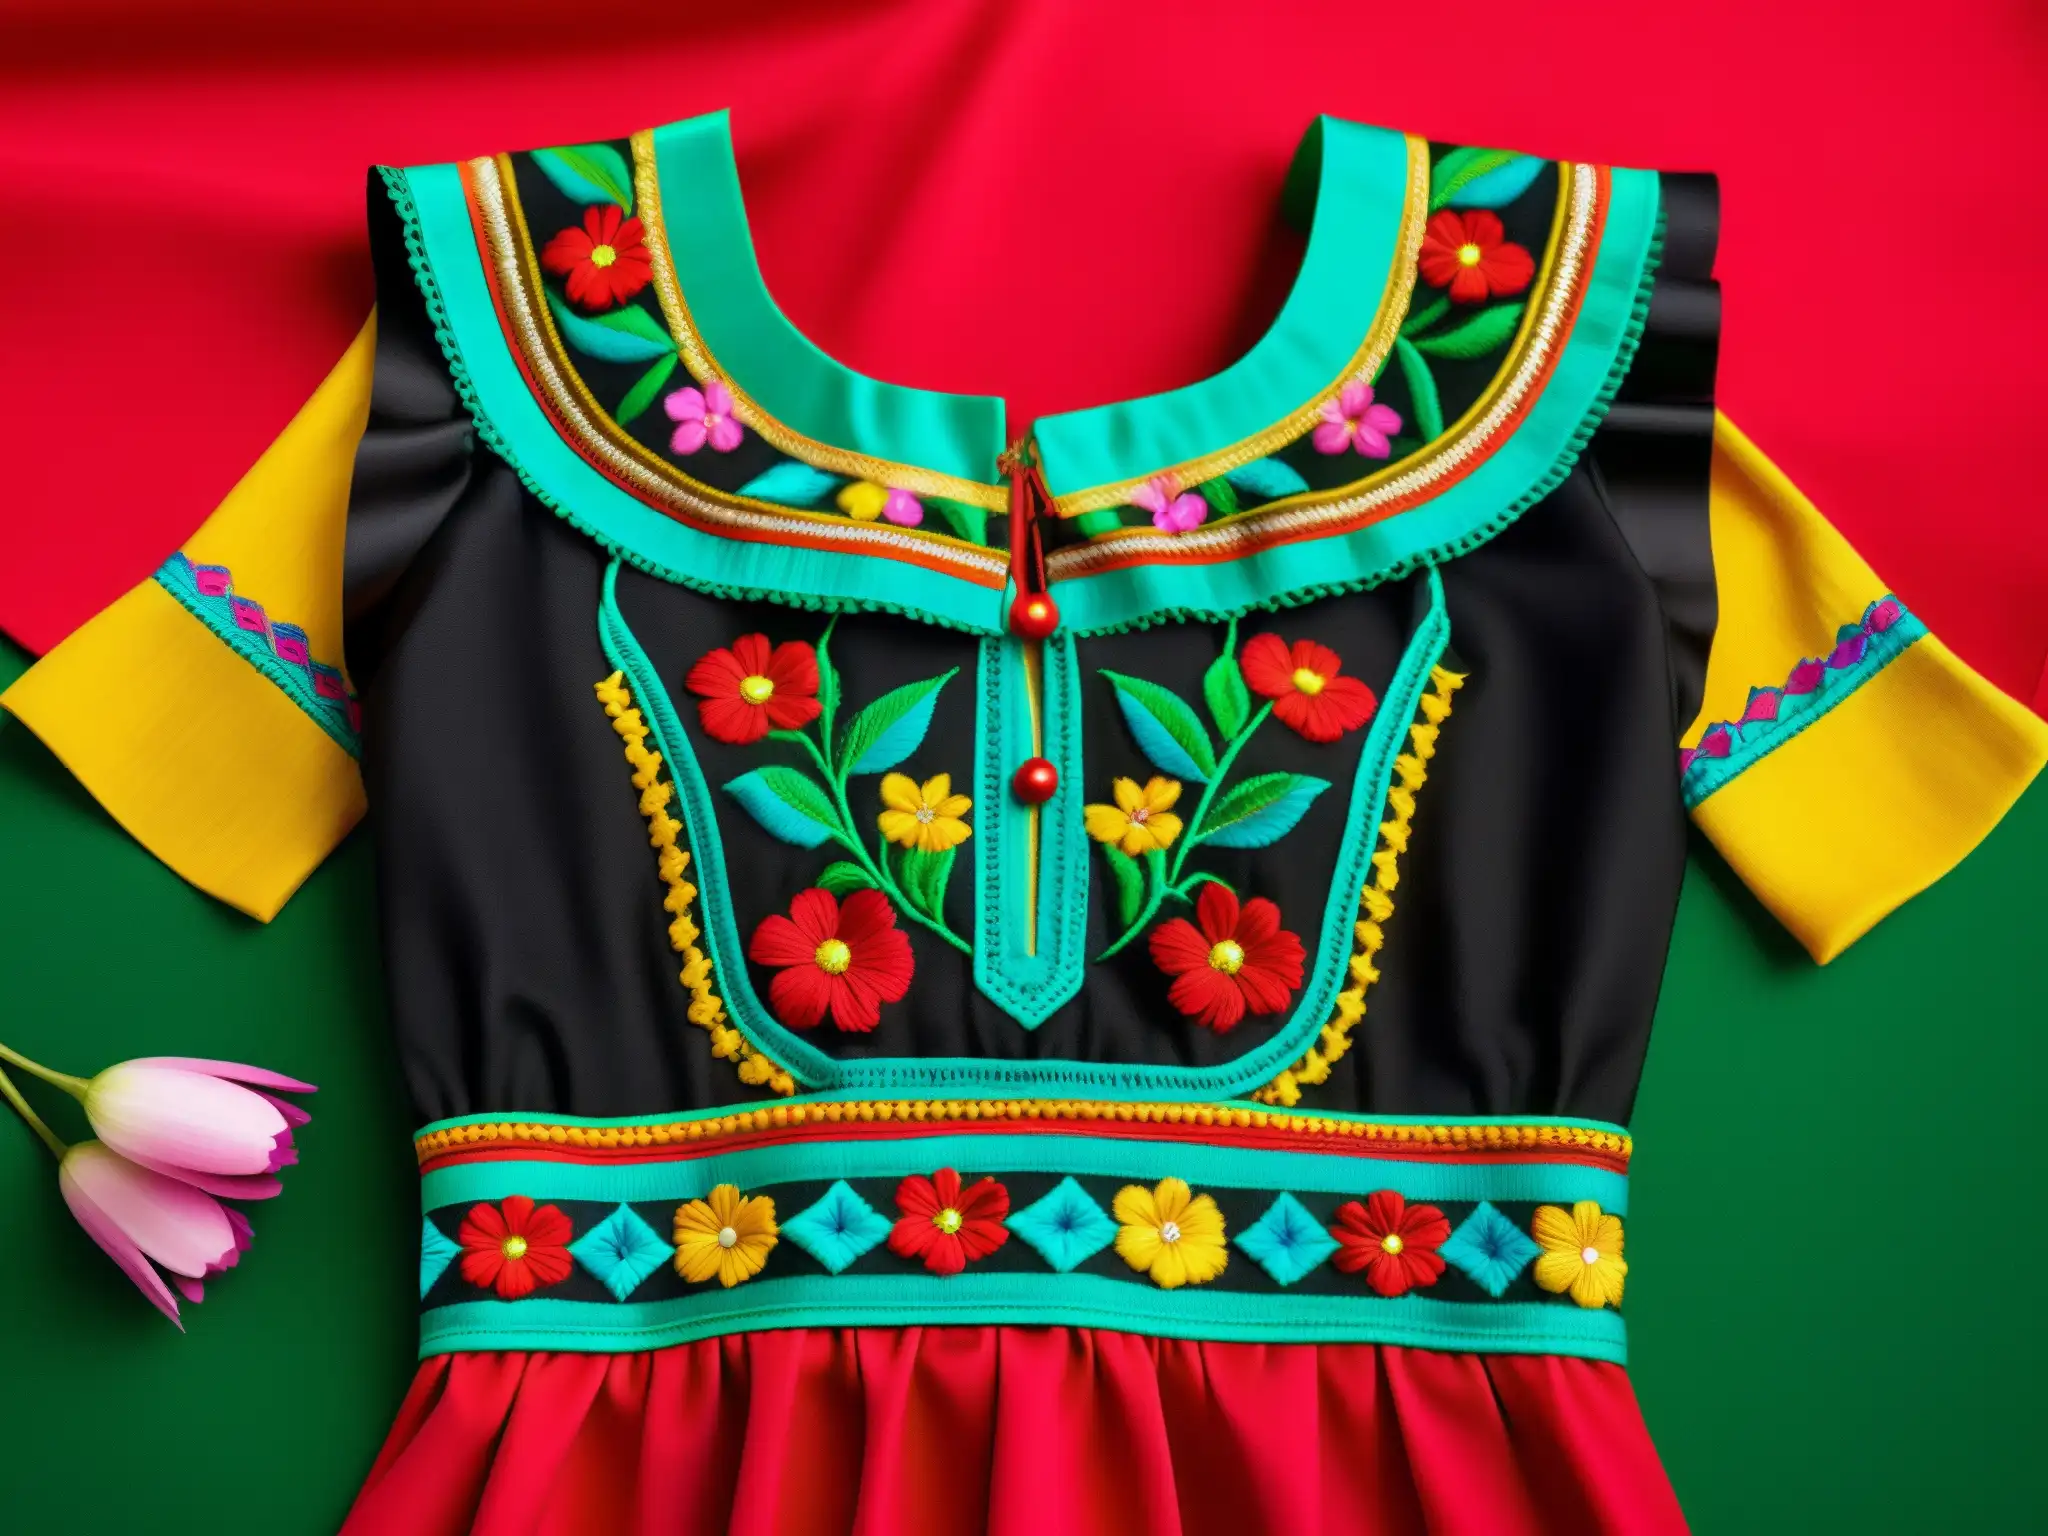 Detalle del bordado y colores vibrantes del vestido tradicional China Poblana, reflejando su origen y evolución cultural en México